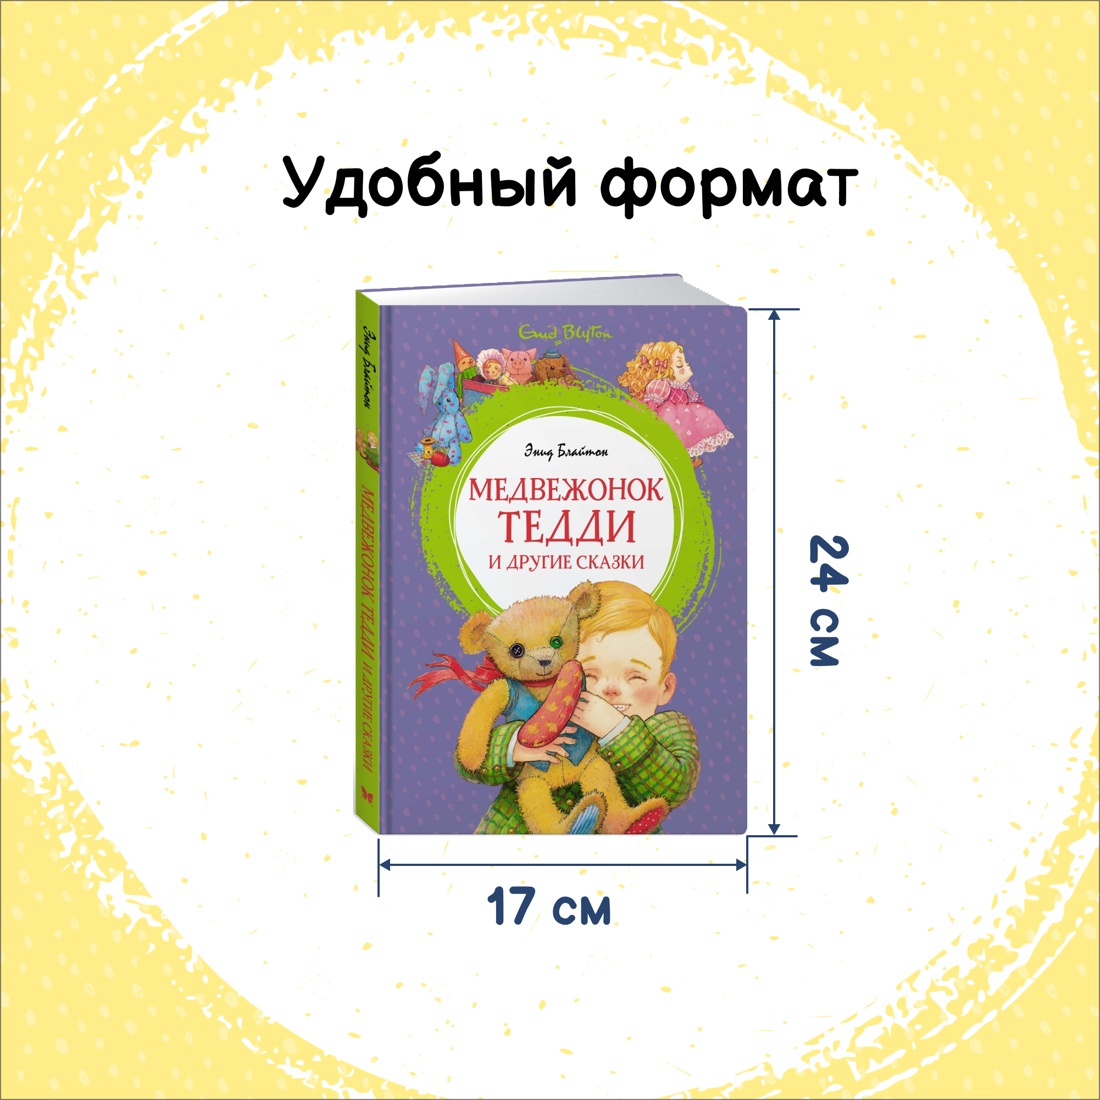 Промо материал к книге "Медвежонок Тедди и другие сказки" №1